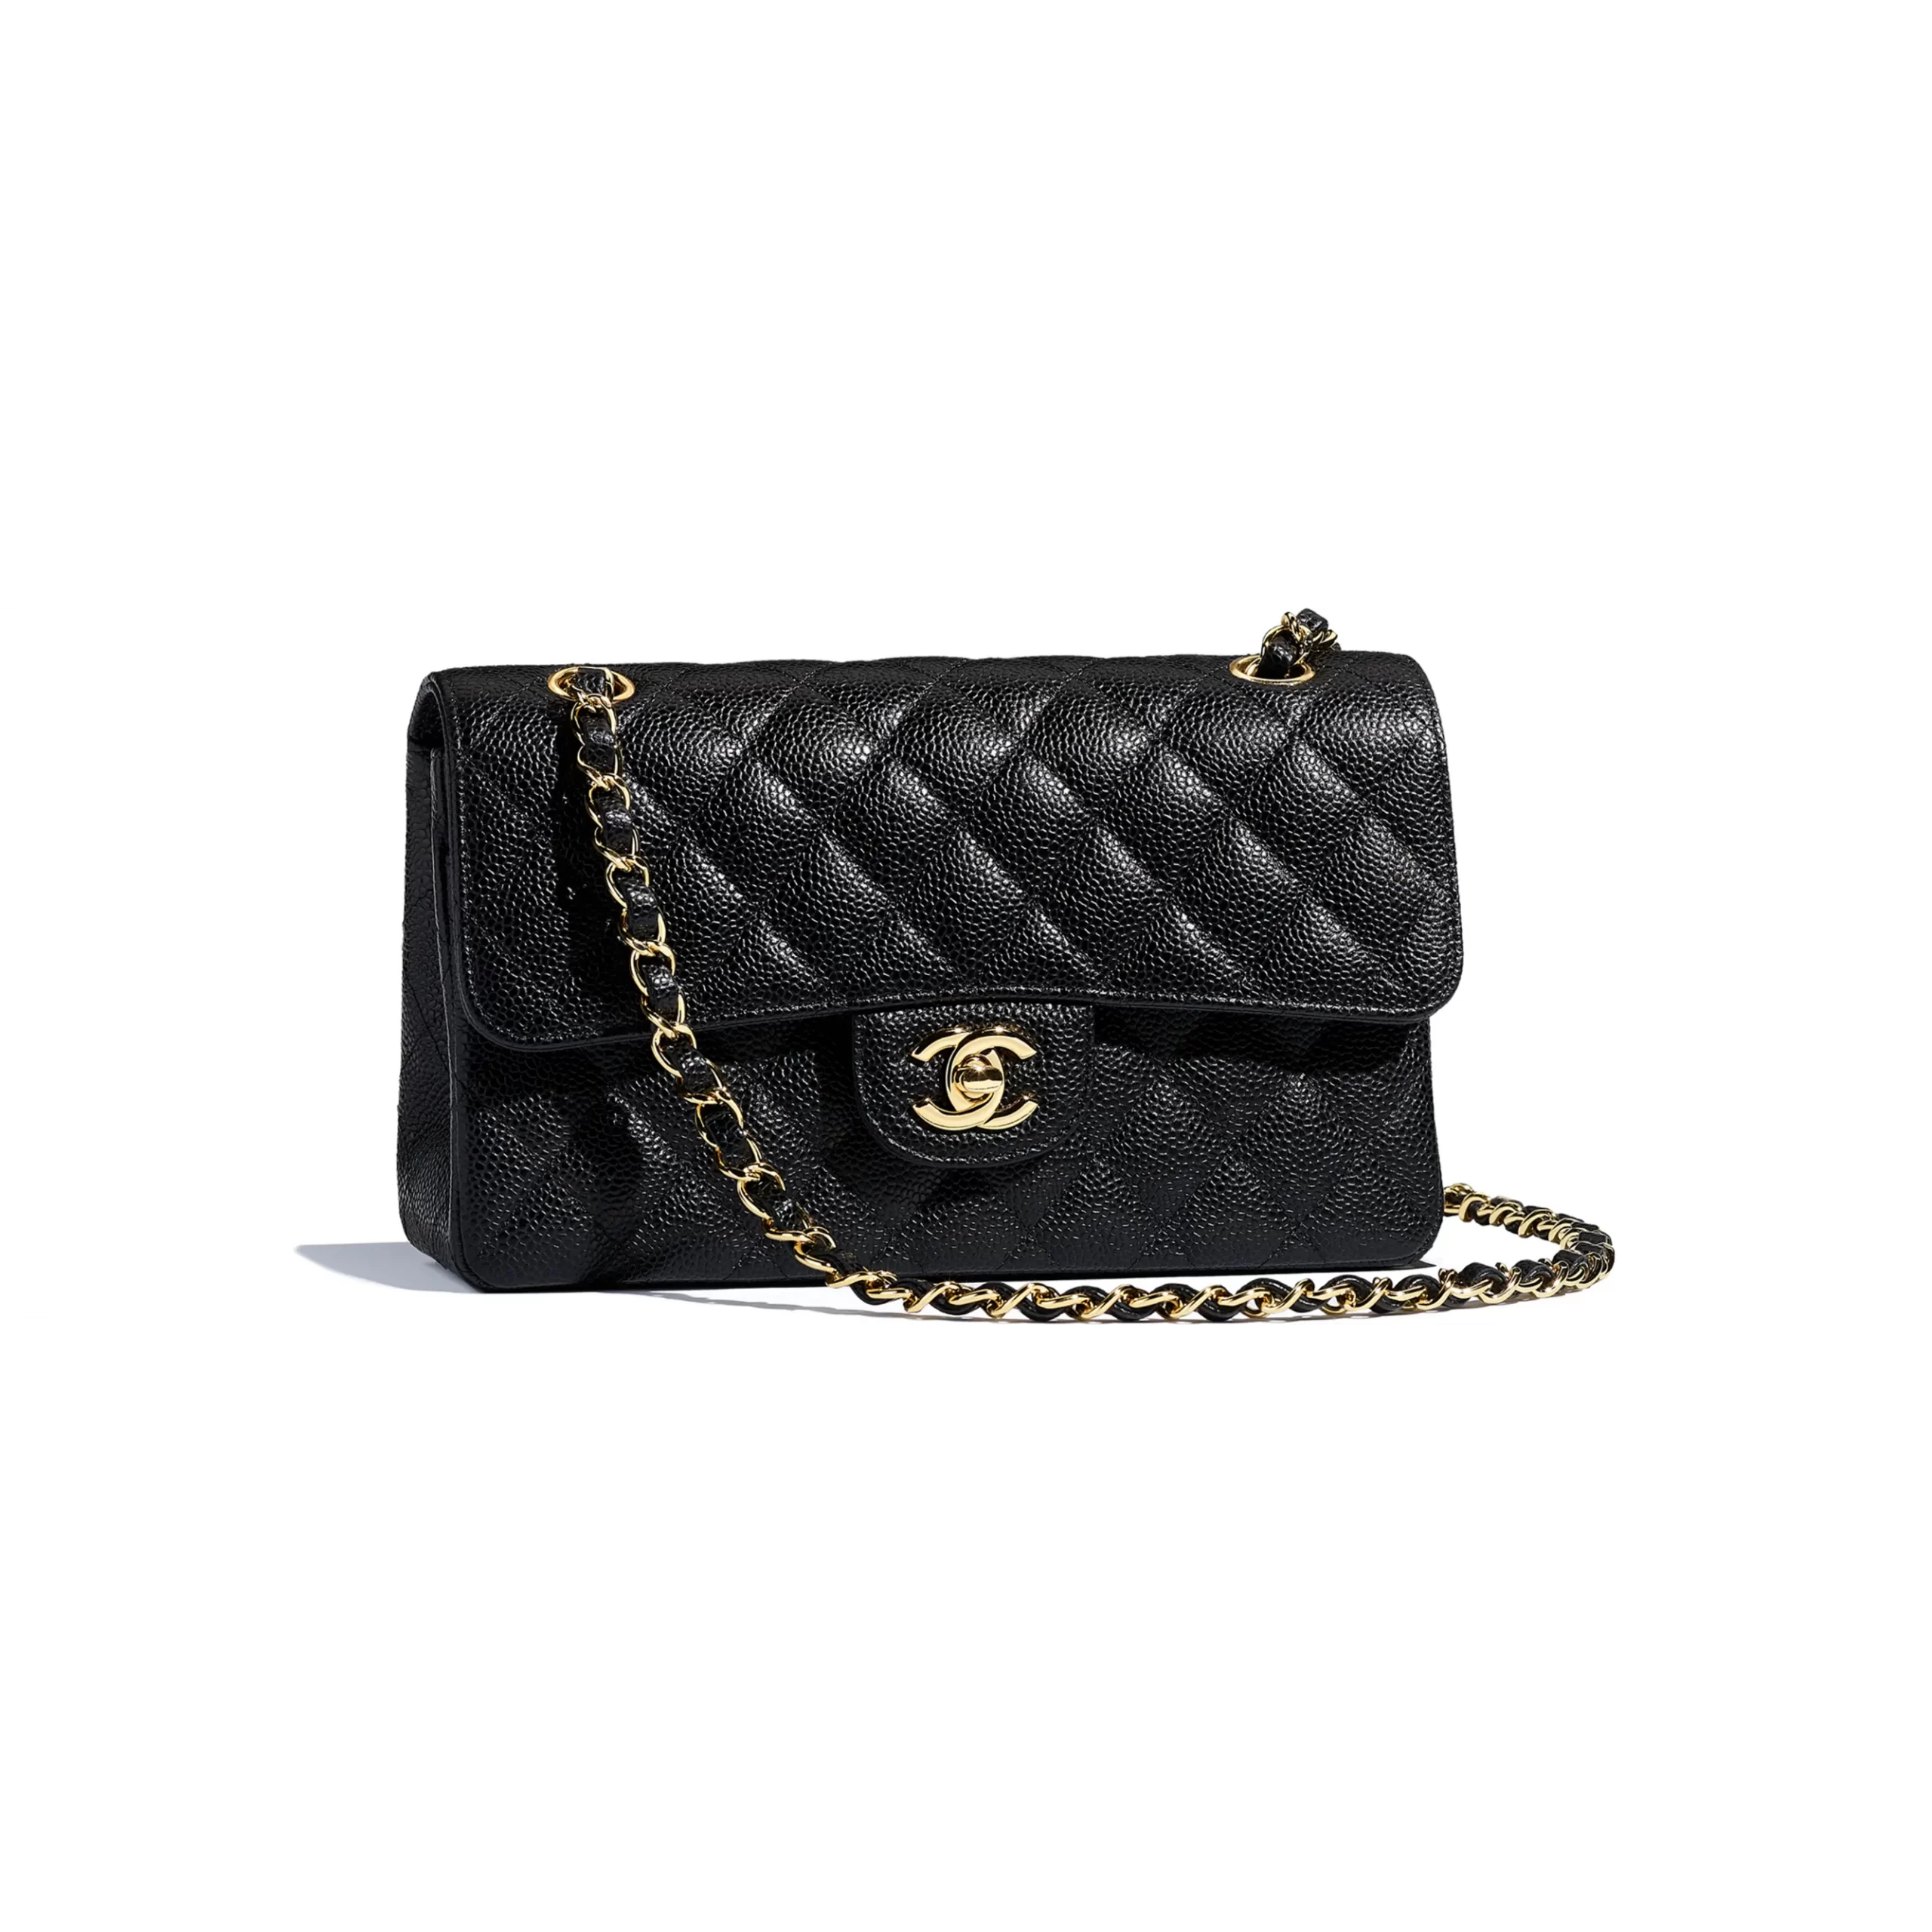 Chanel Sac Rabat Lambskin Black Classic Bag Purse A68055Y07360  eBay